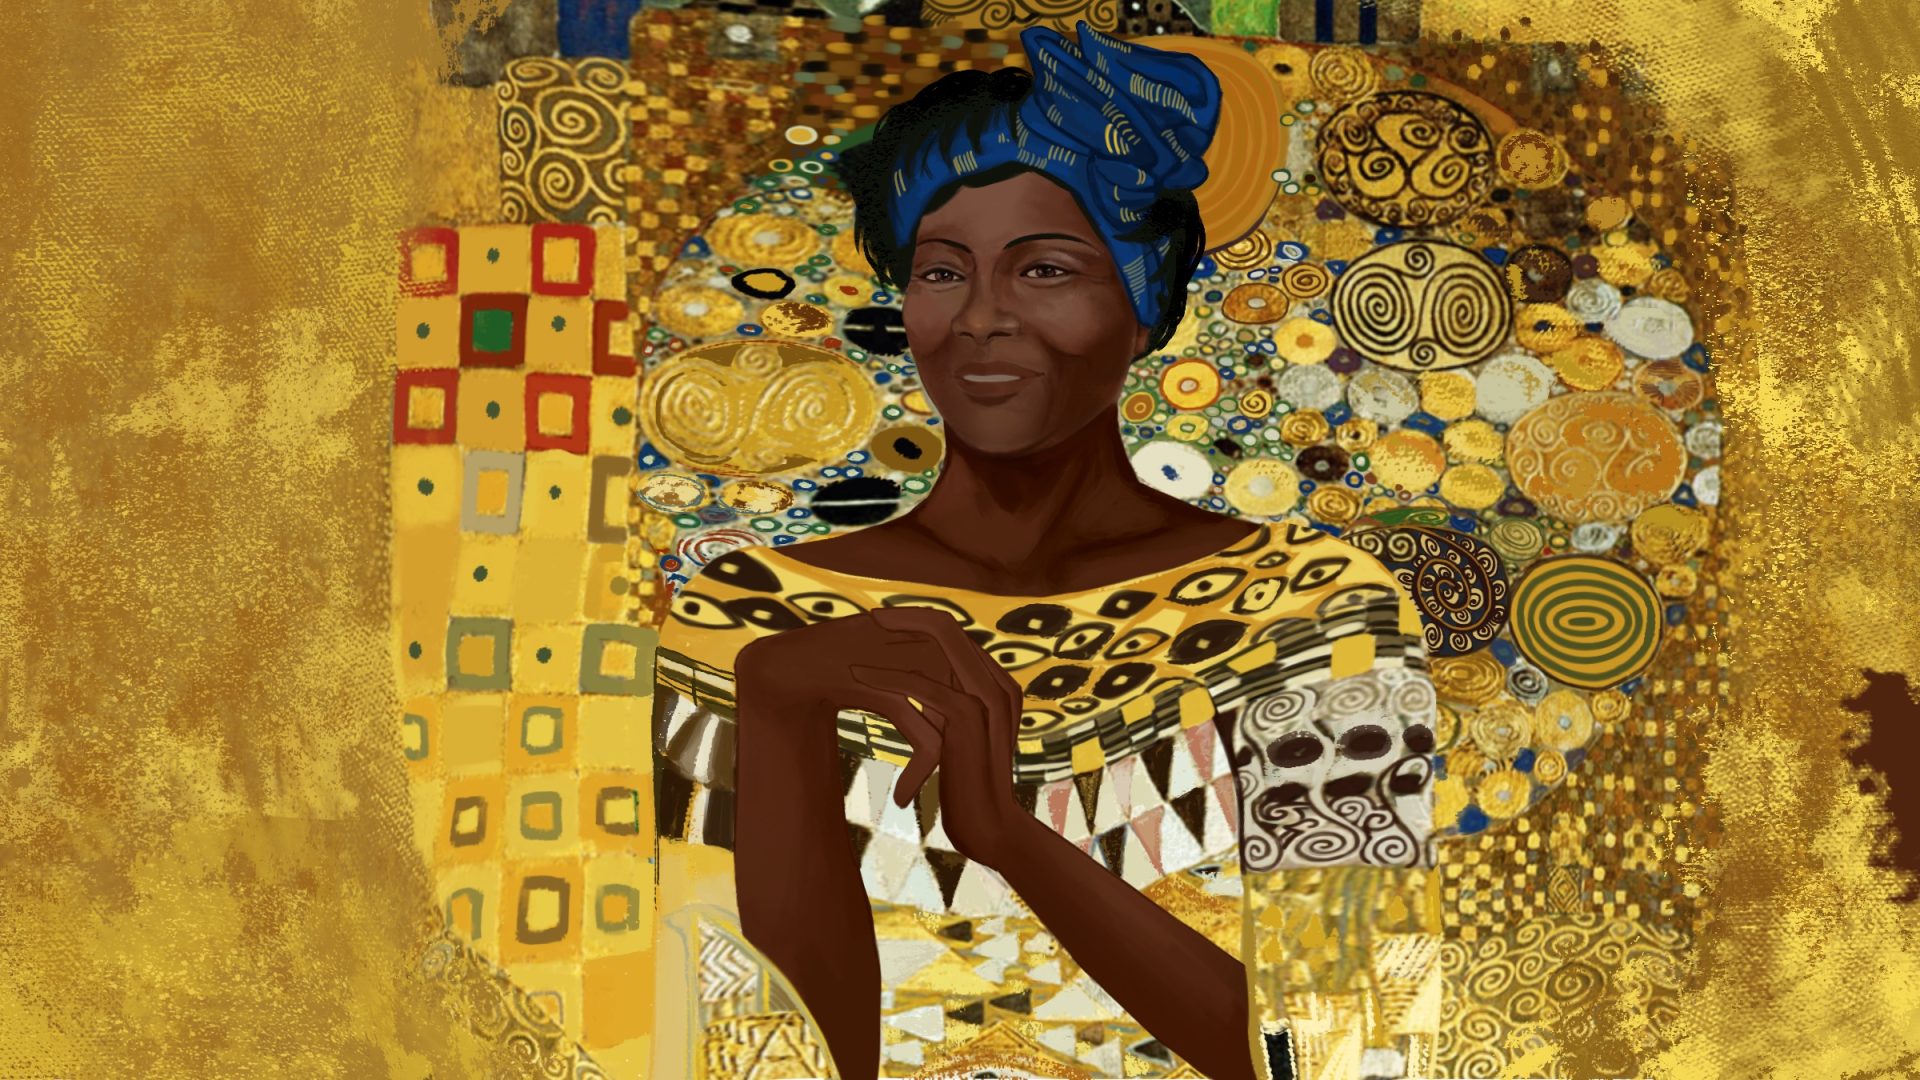 Retrato de Wangari Maathia al estilo de “Adele Bloch-Bauer II” del pintor austriaco Gustav Klimt.